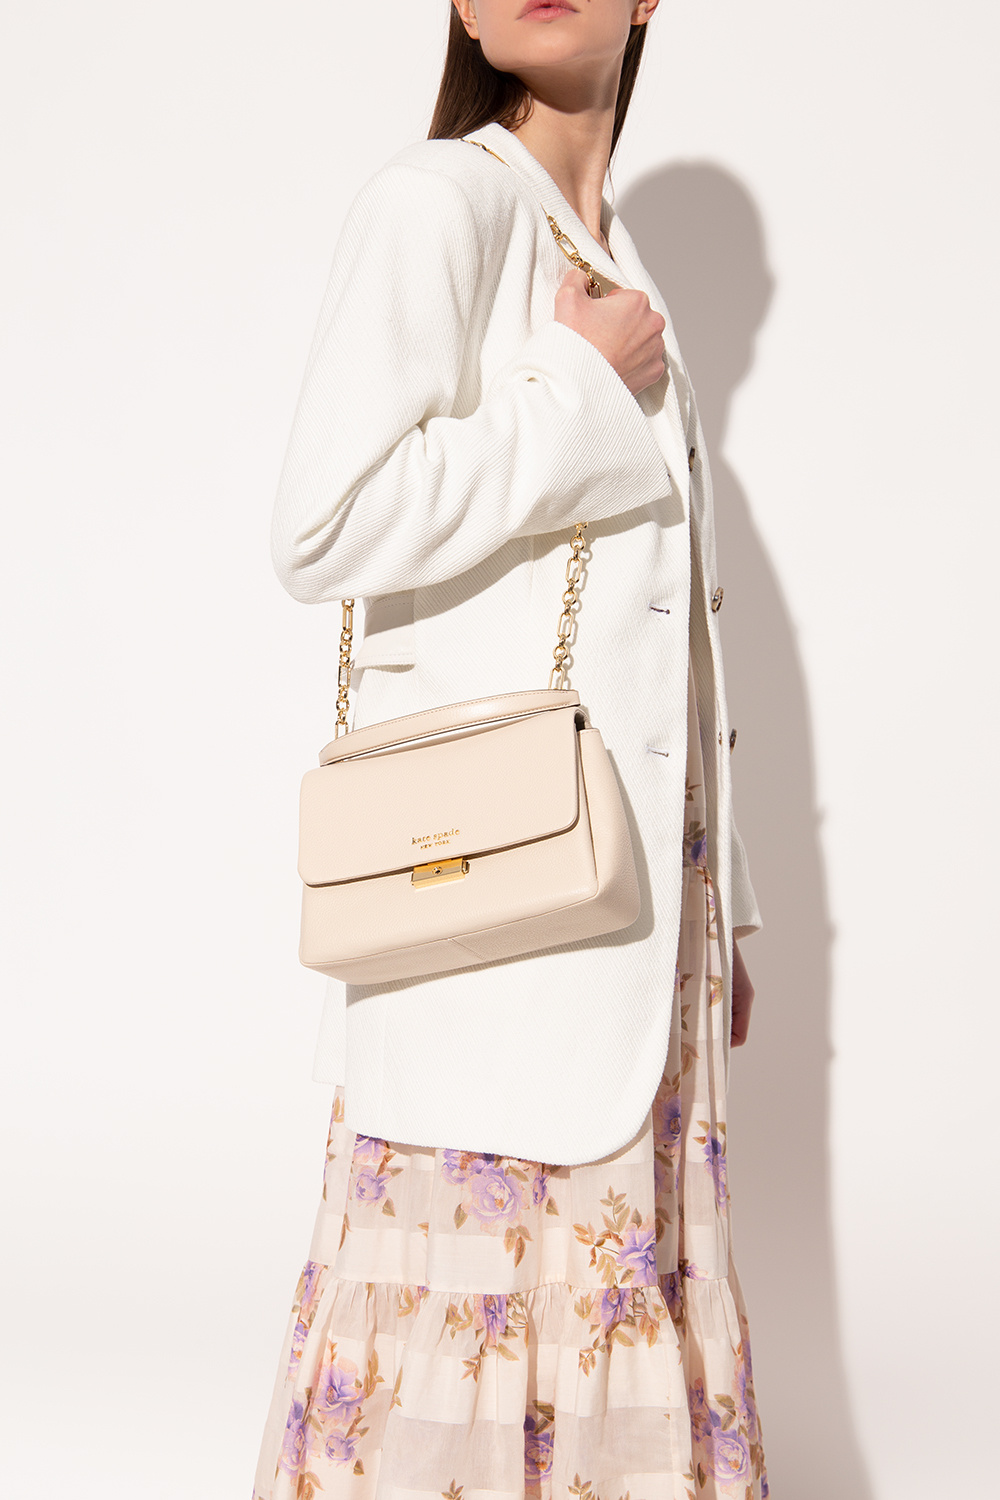 Kate Spade 'Carlyle Medium' shoulder bag, Women's Bags